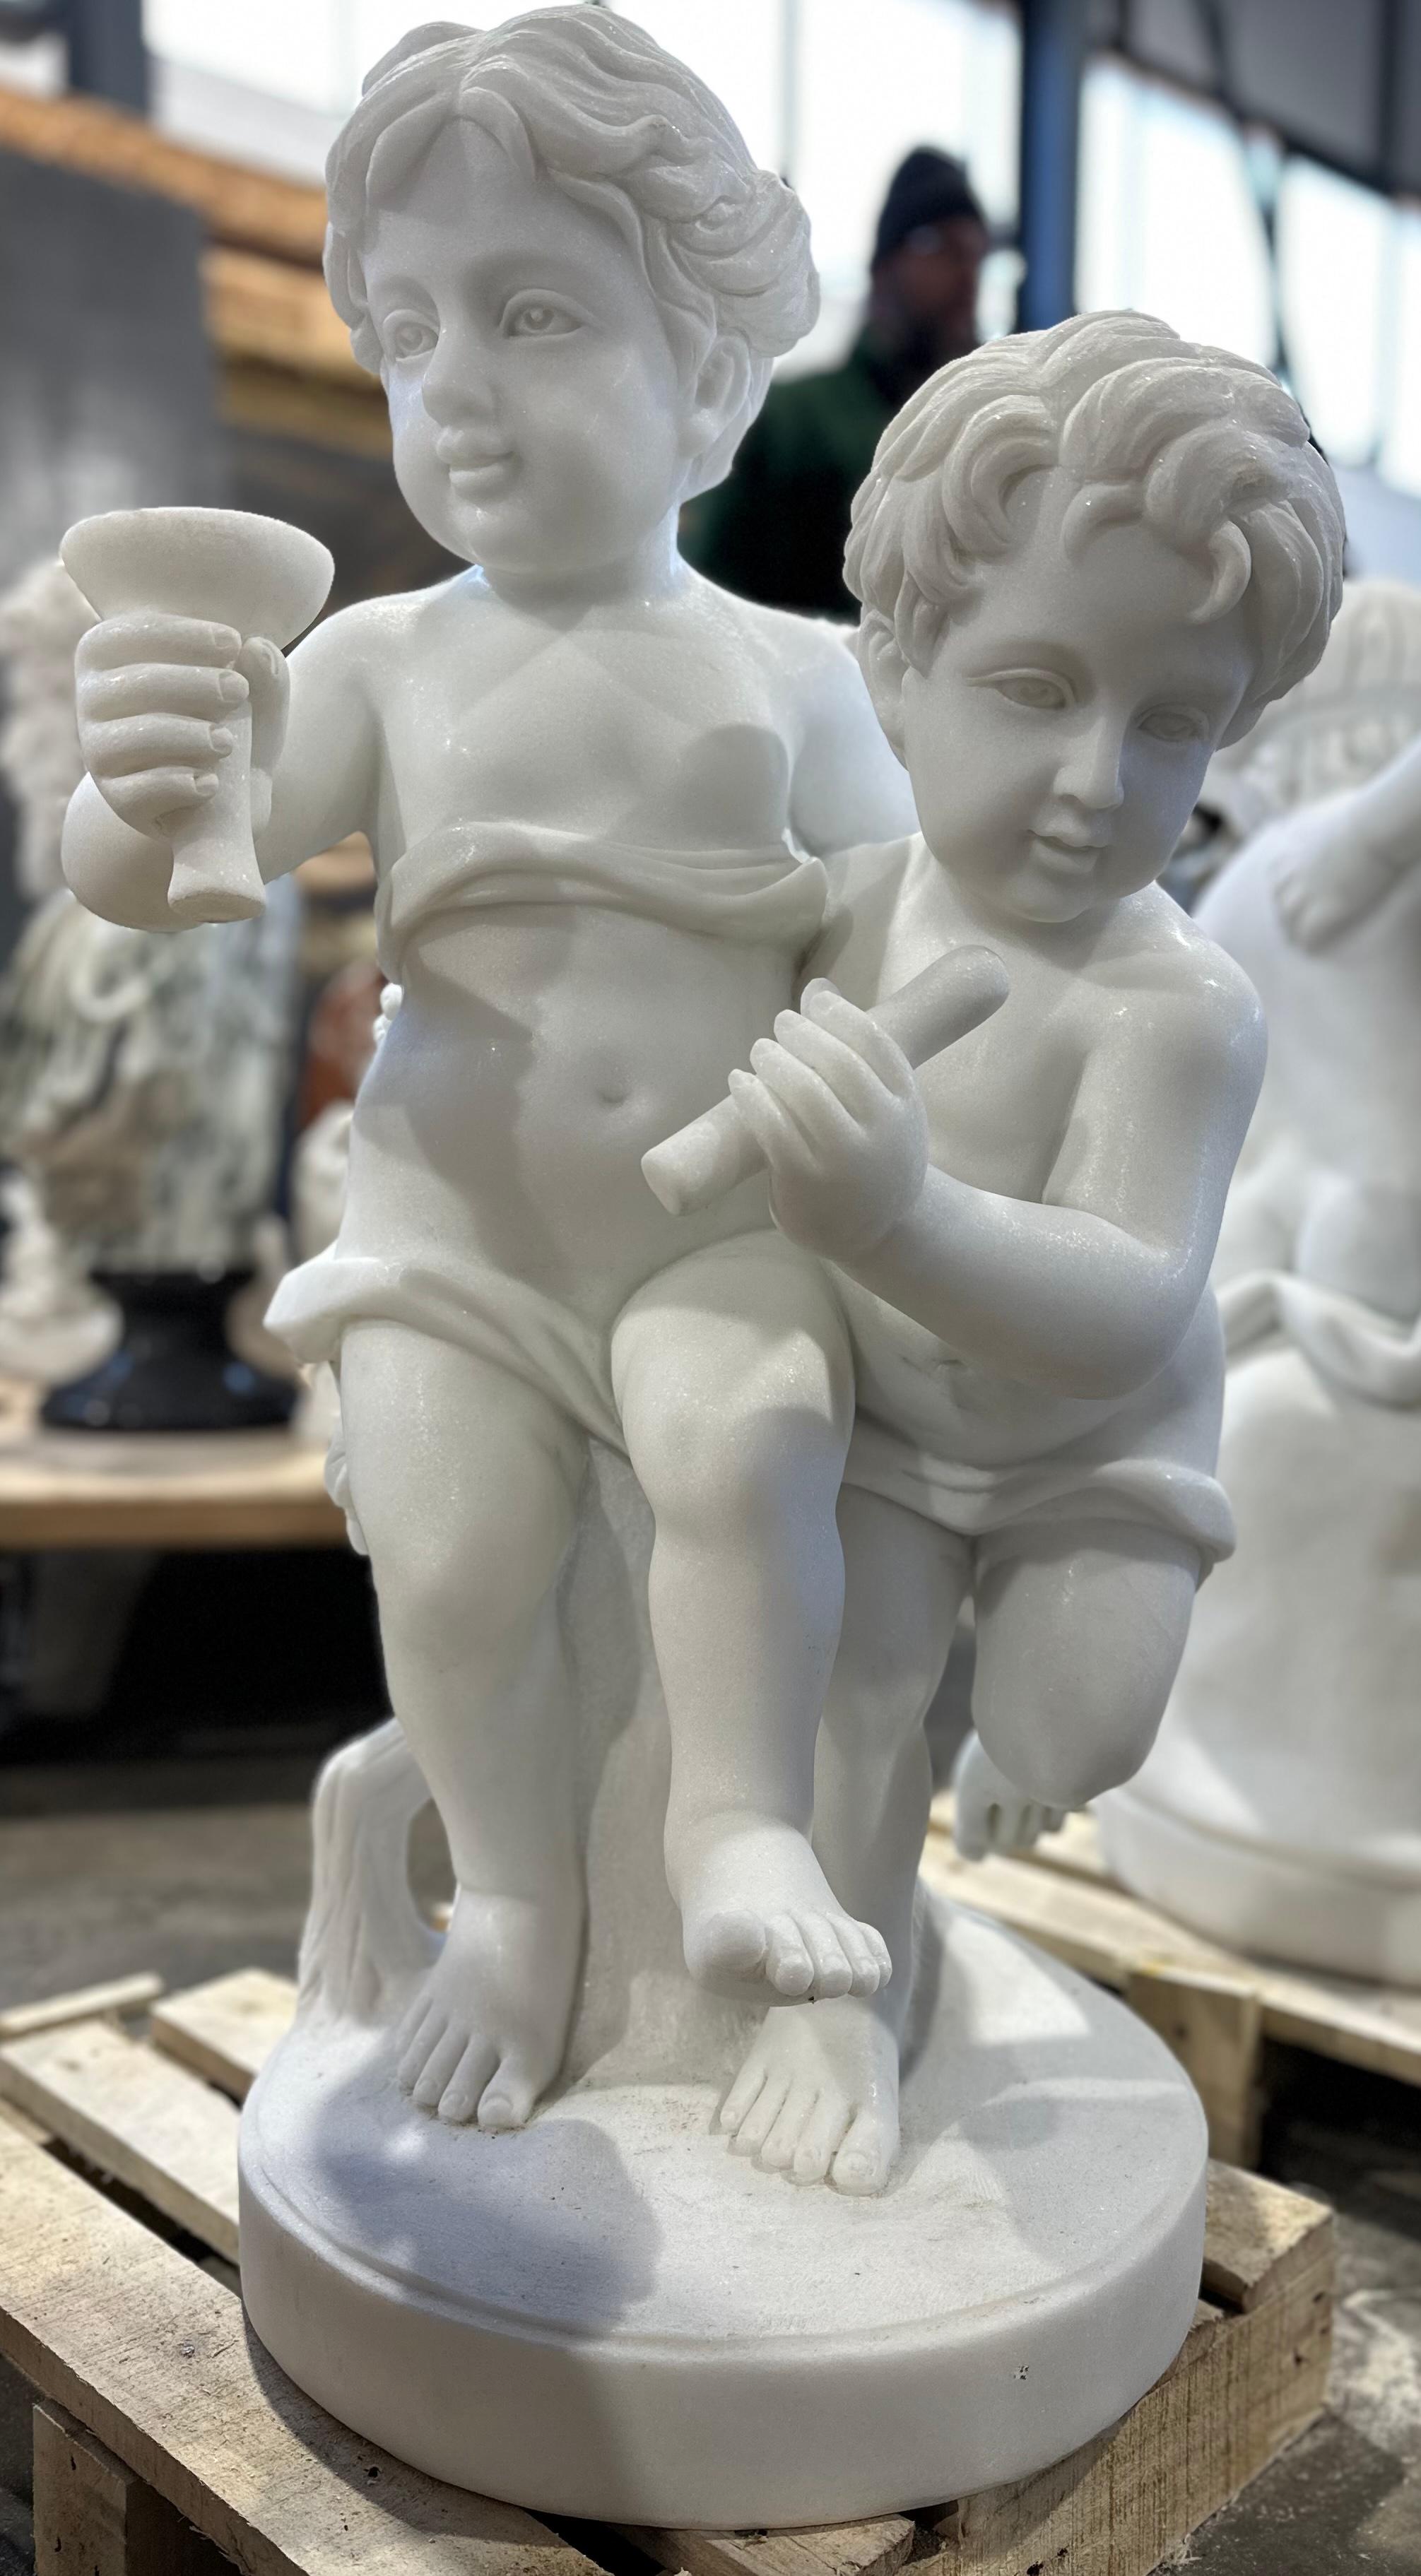 Eine elegante Skulptur aus weißem Marmor mit zwei kindlichen Putten, die fröhlich spazieren gehen, während die eine aus einem Becher trinkt und die andere sich an einen Ast lehnt. 
Die Schnitzerei ist klar und detailliert, von den gewellten Haaren